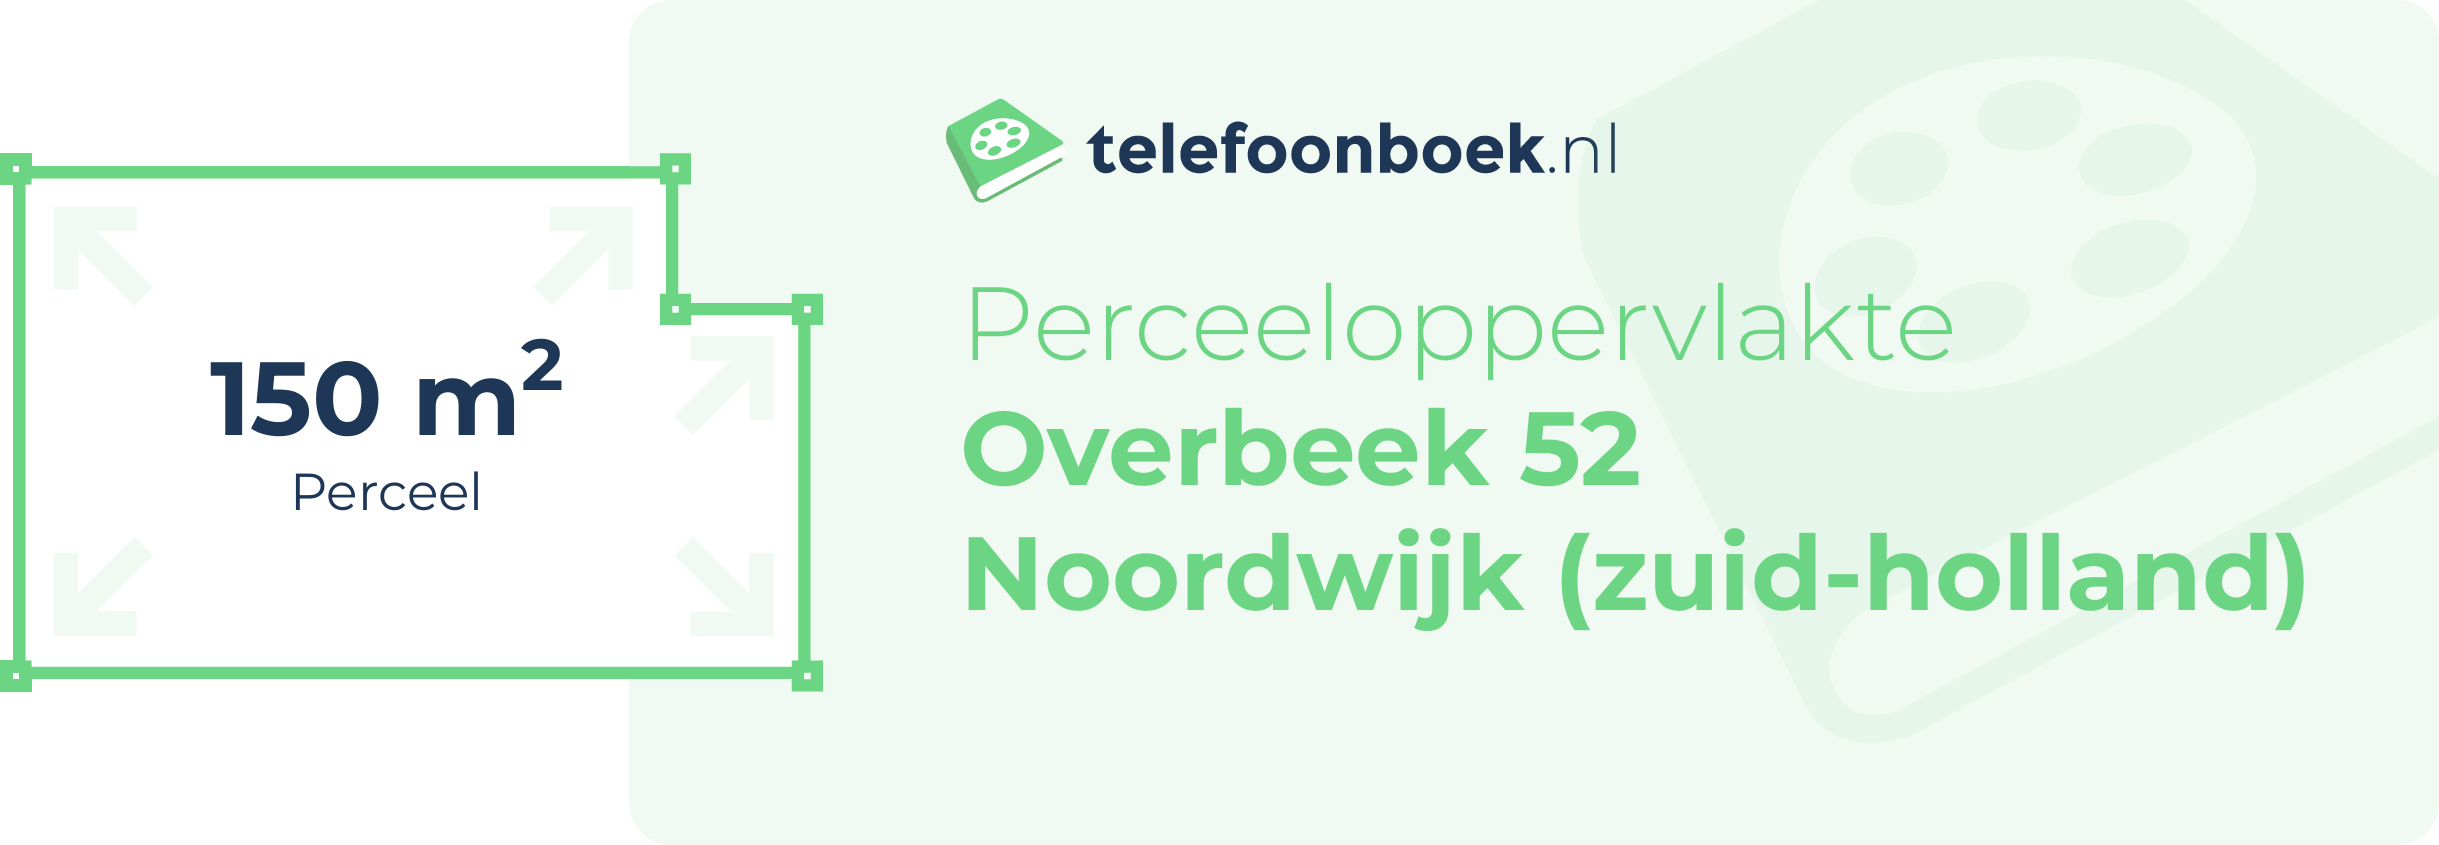 Perceeloppervlakte Overbeek 52 Noordwijk (Zuid-Holland)